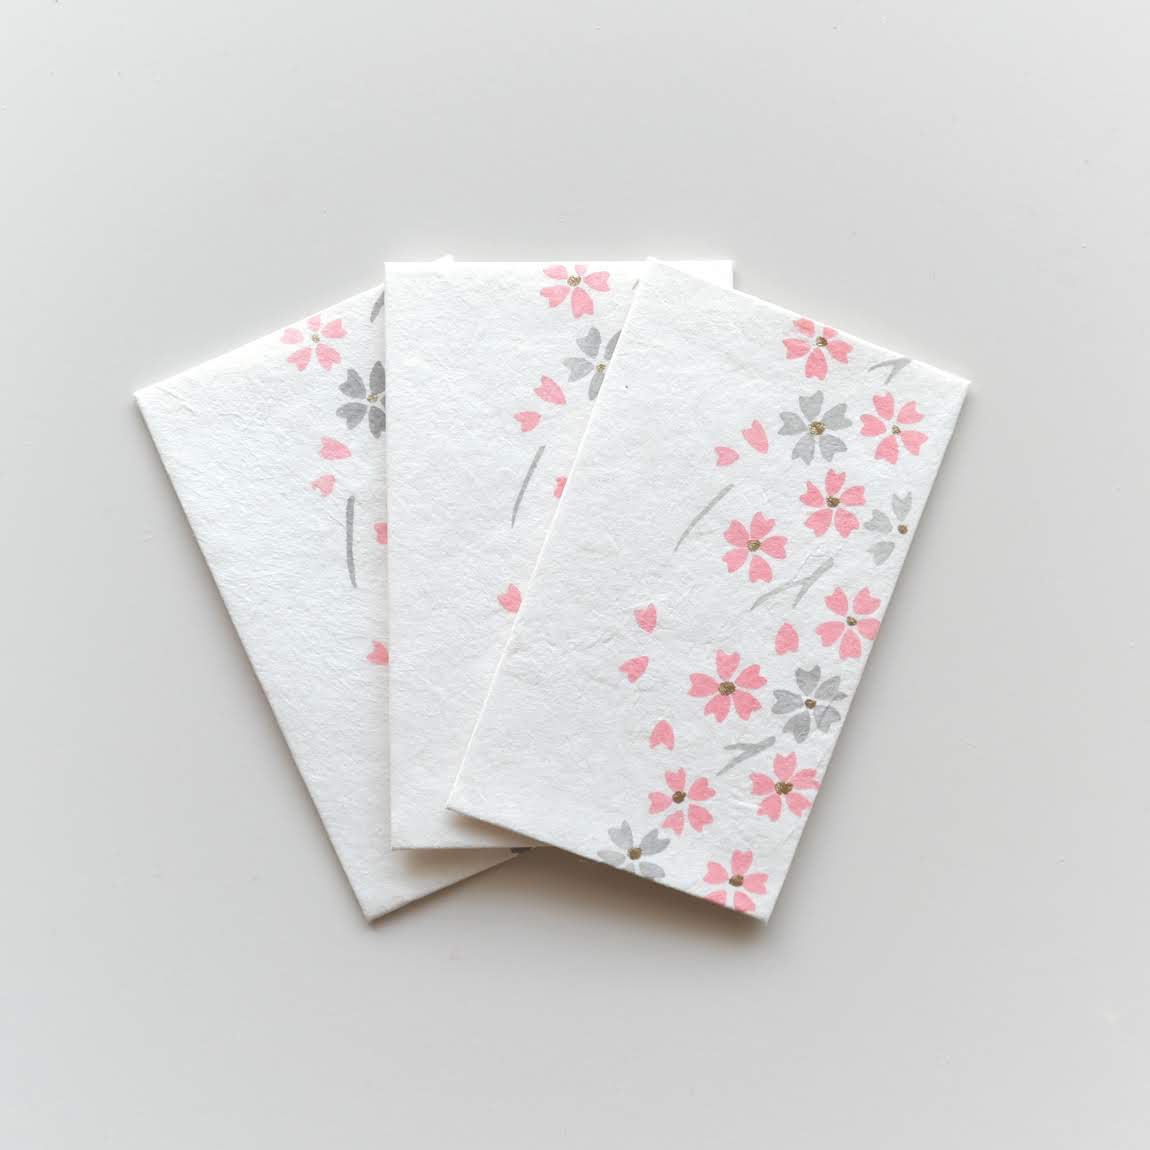 【新登場！伝統技法、型染めで一色ずつ職人が手摺りで製作しました！】手摺り型染めぽち袋 しだれ桜